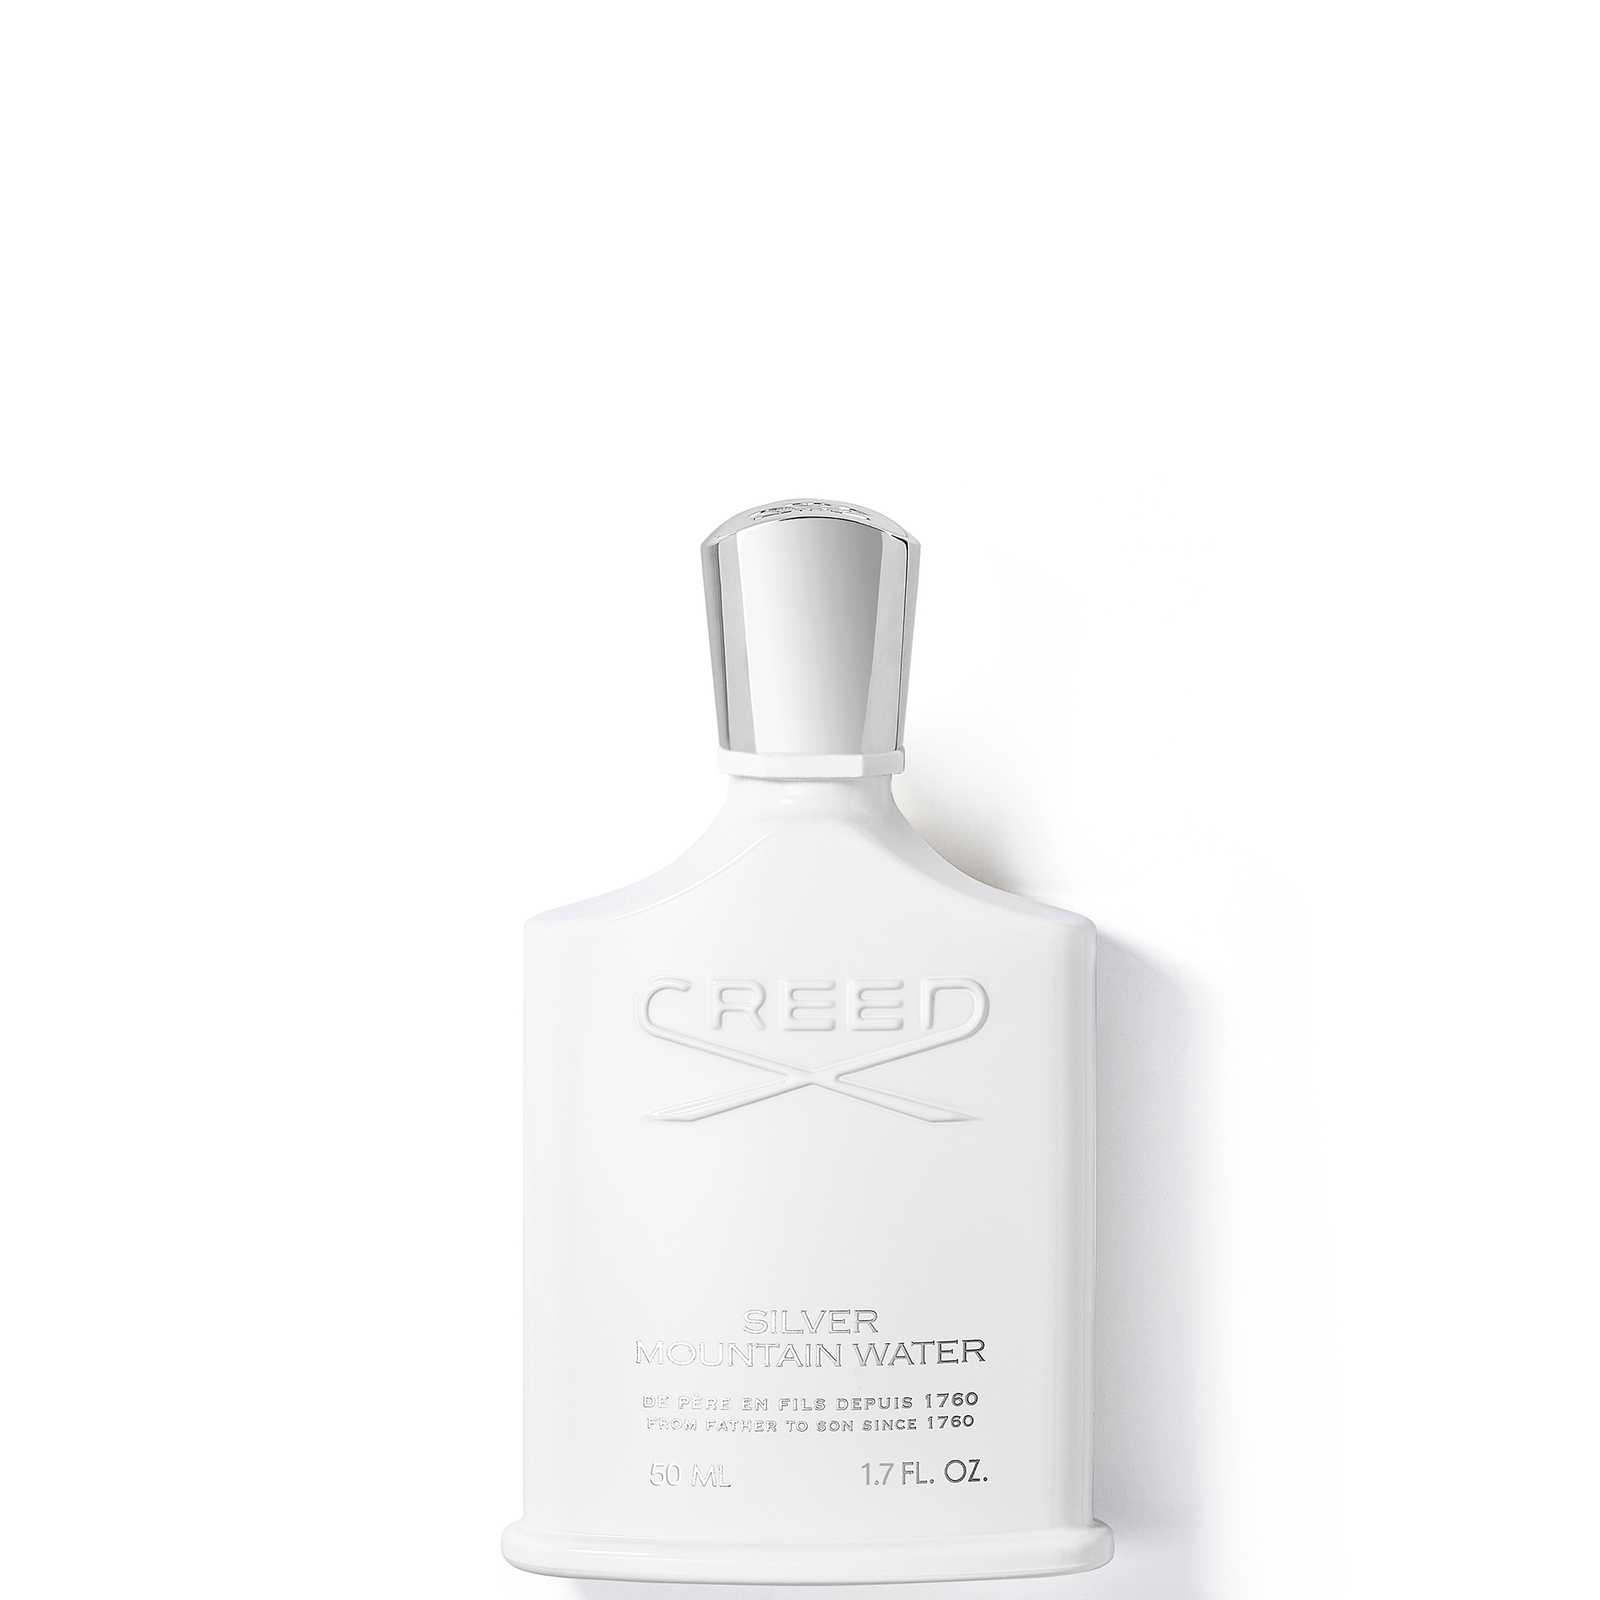 Photos - Women's Fragrance Creed Silver Mountain Water Eau de Parfum - 50ml 